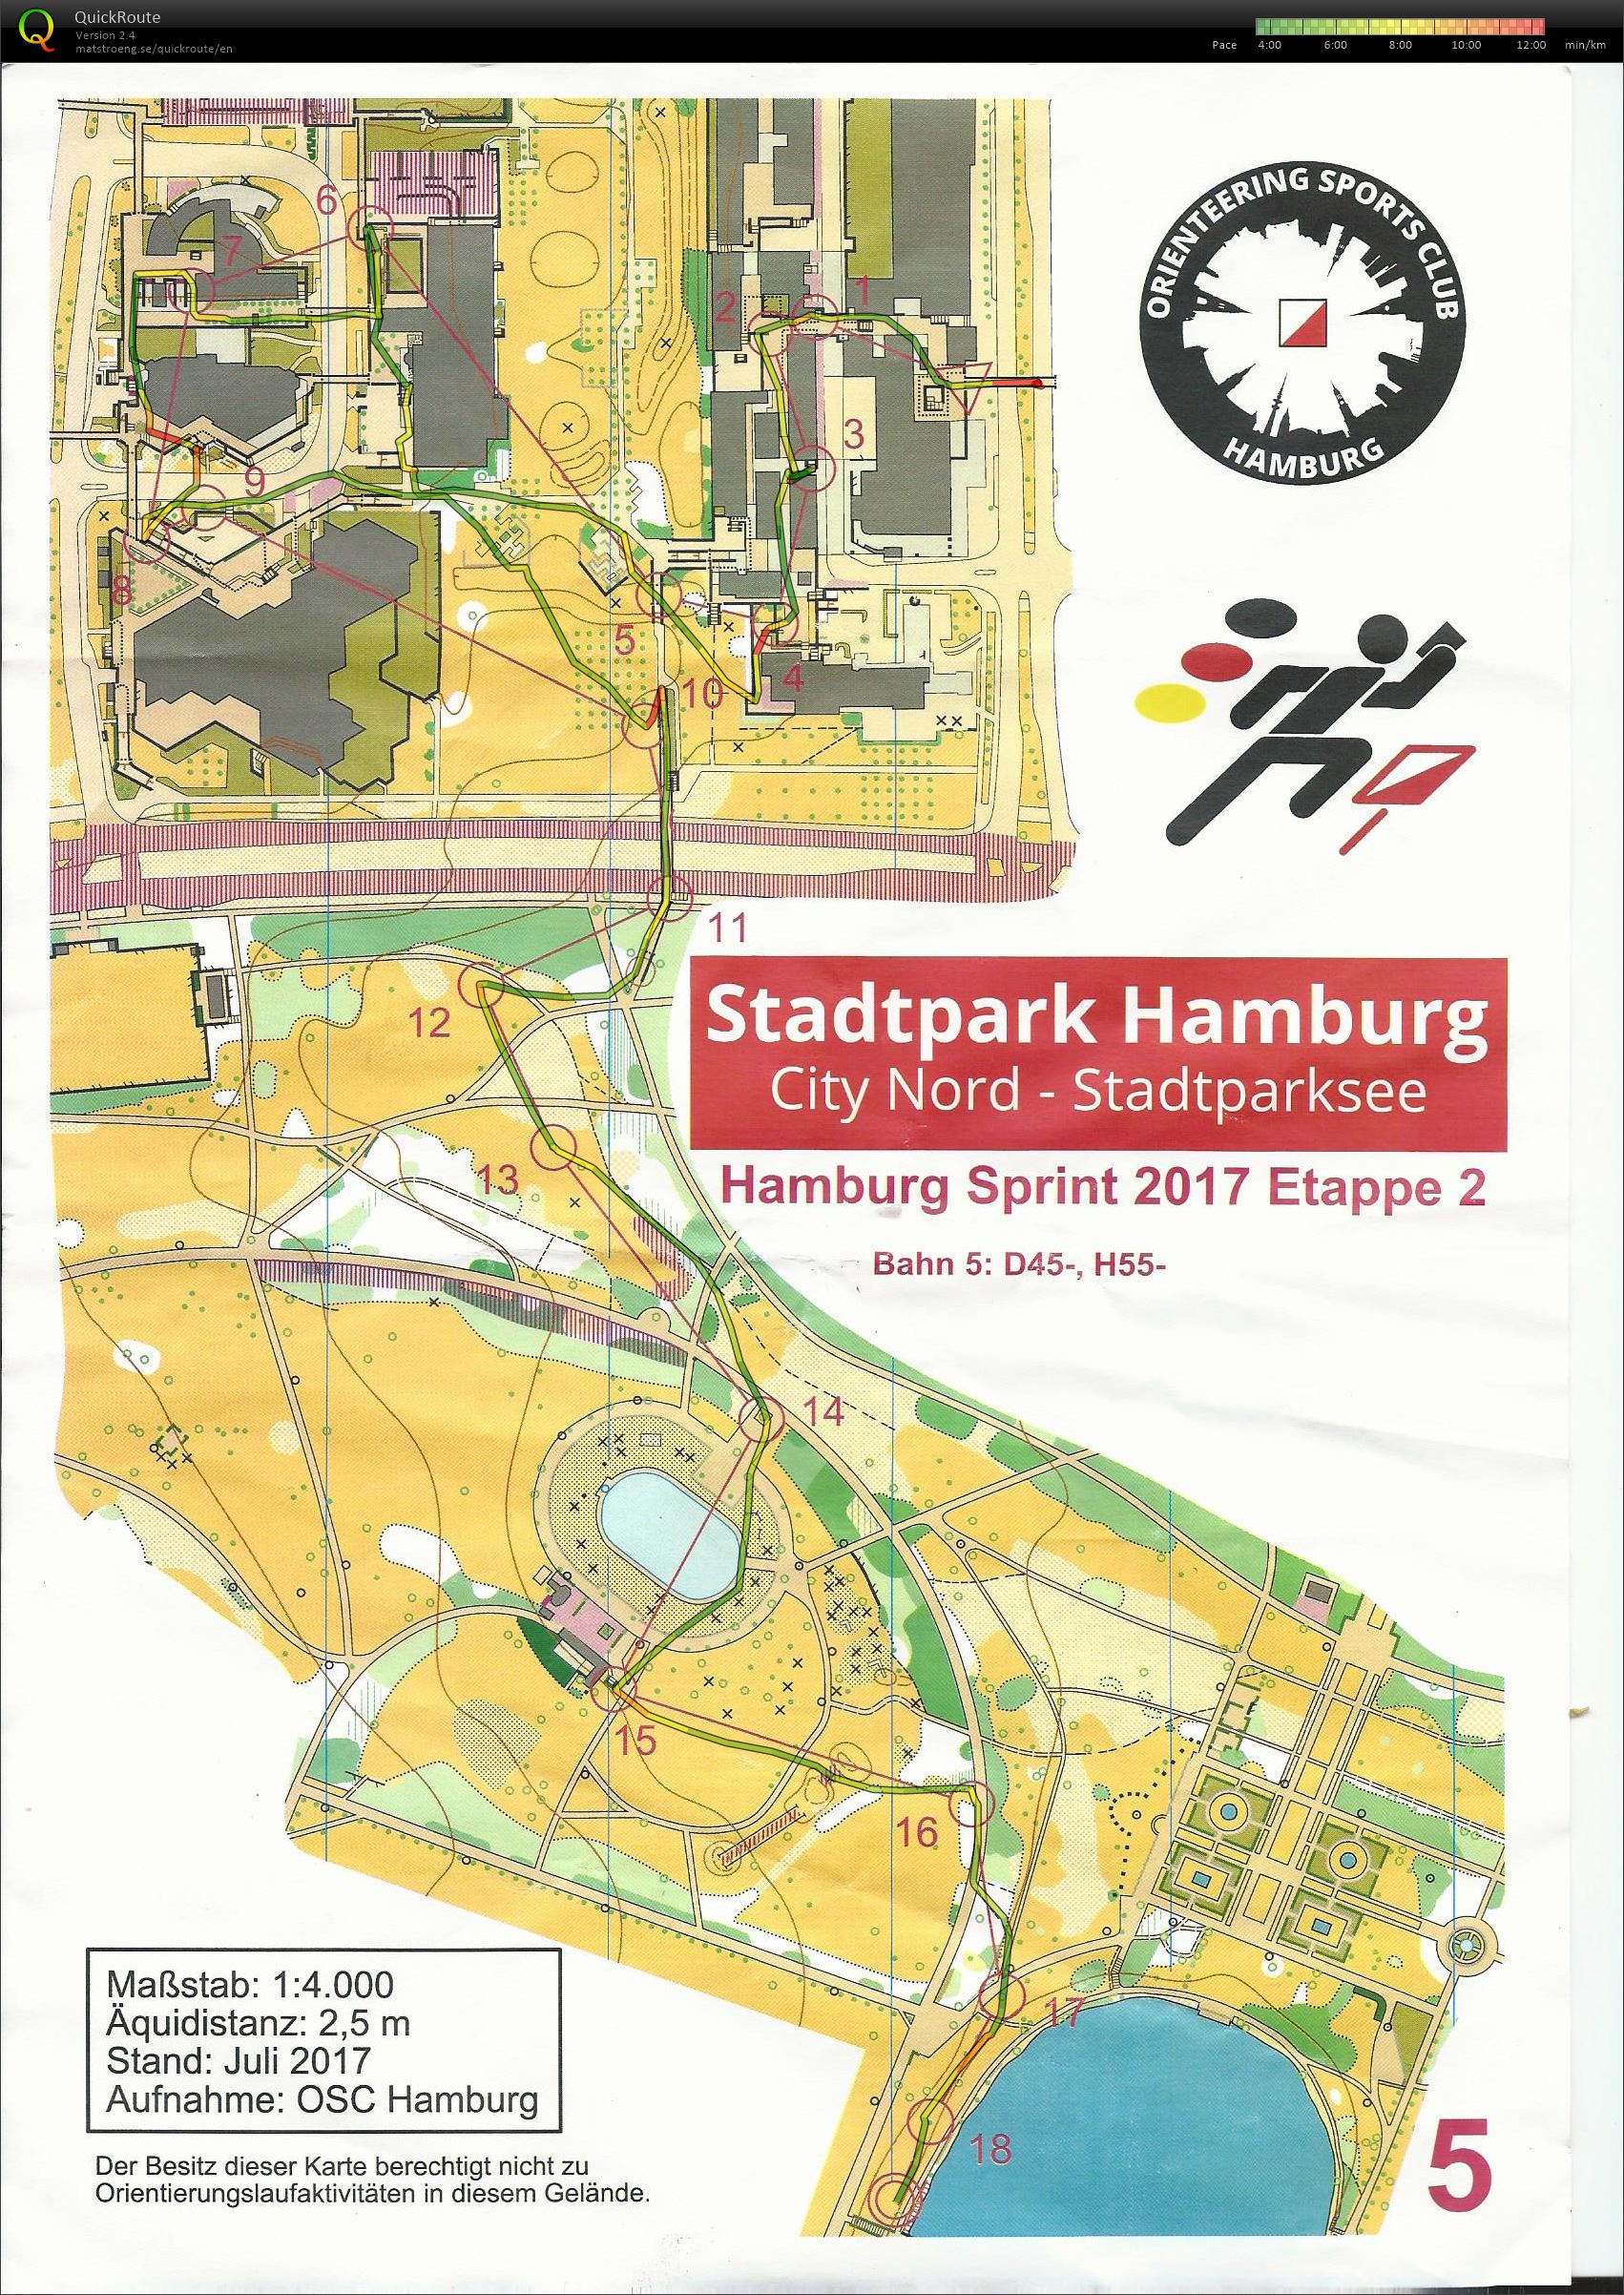 Hamburg sprint 2017 etape 2 (12.08.2017)